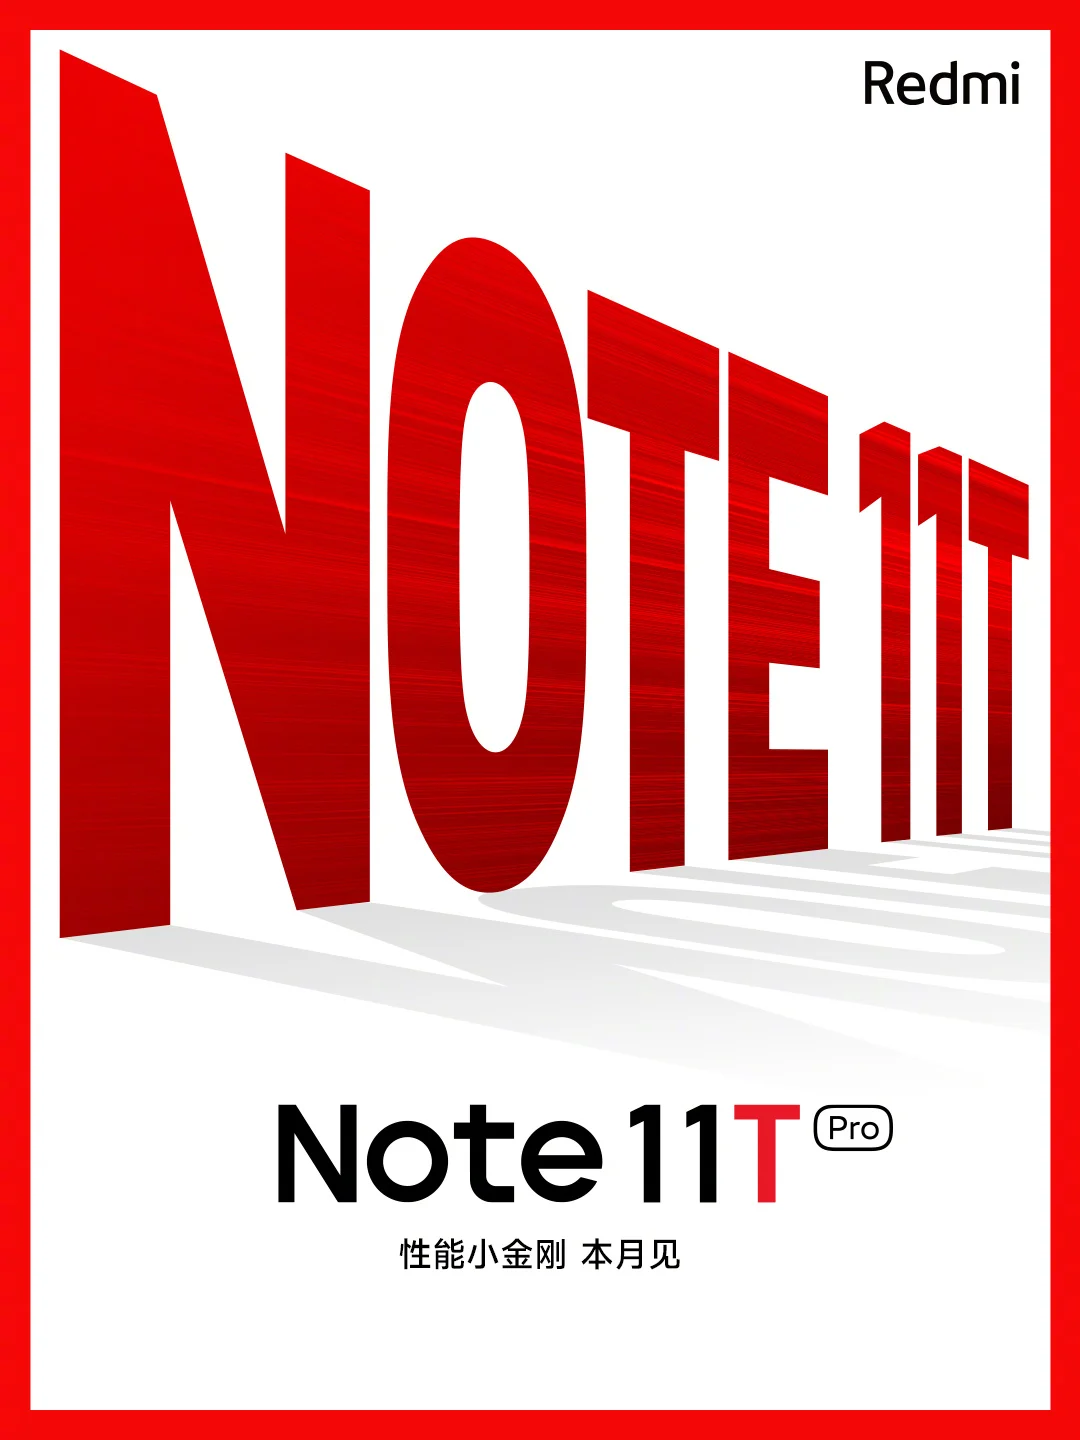 گوشی جدید پوکو در پلتفرم FCC دیده شد؛ ری‌برند شده از Redmi Note 11T Pro